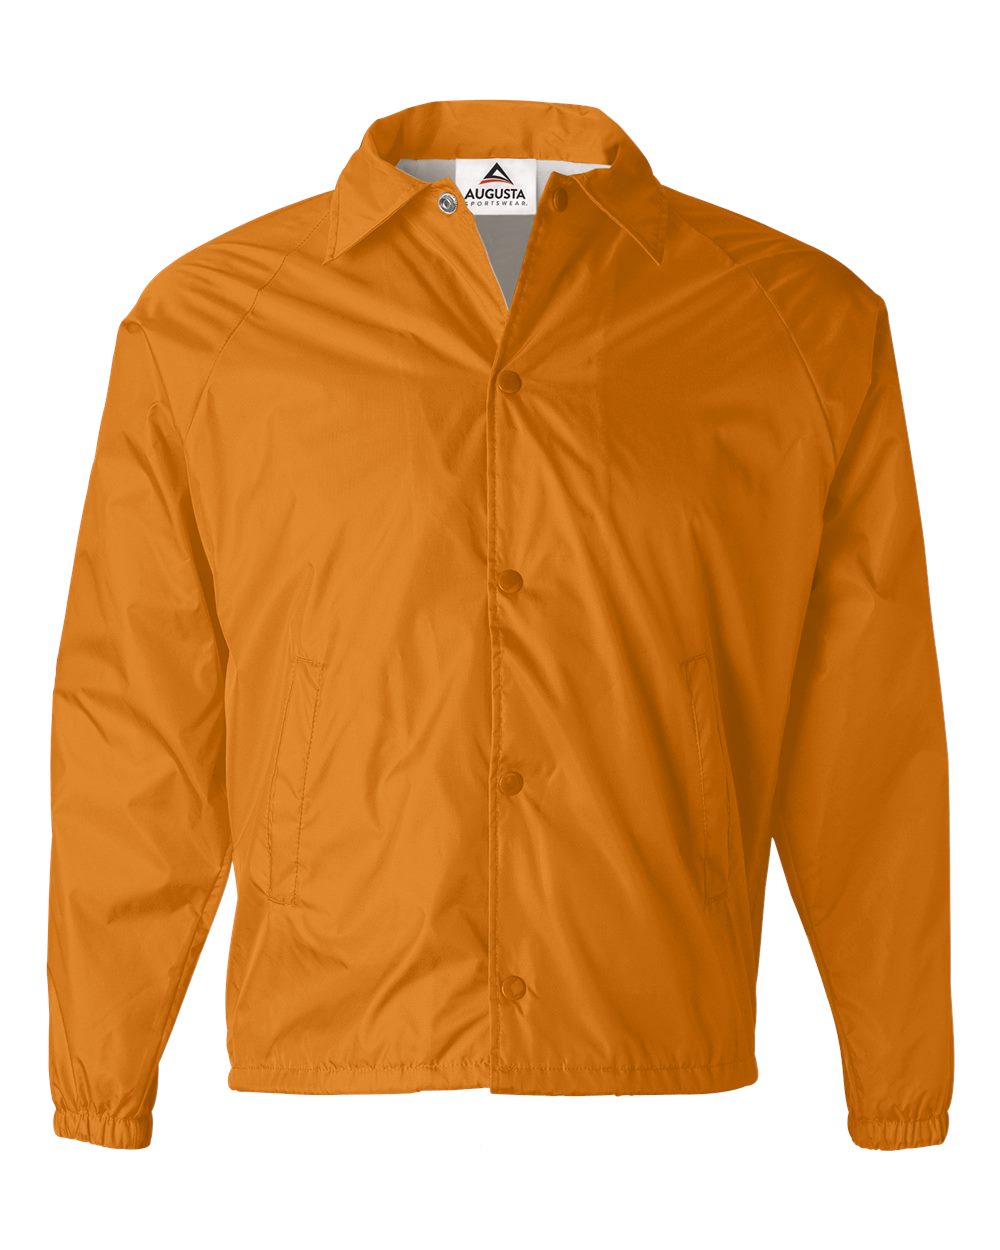 Augusta Sportswear - Coach's Jacket - 3100 - S - 5XL